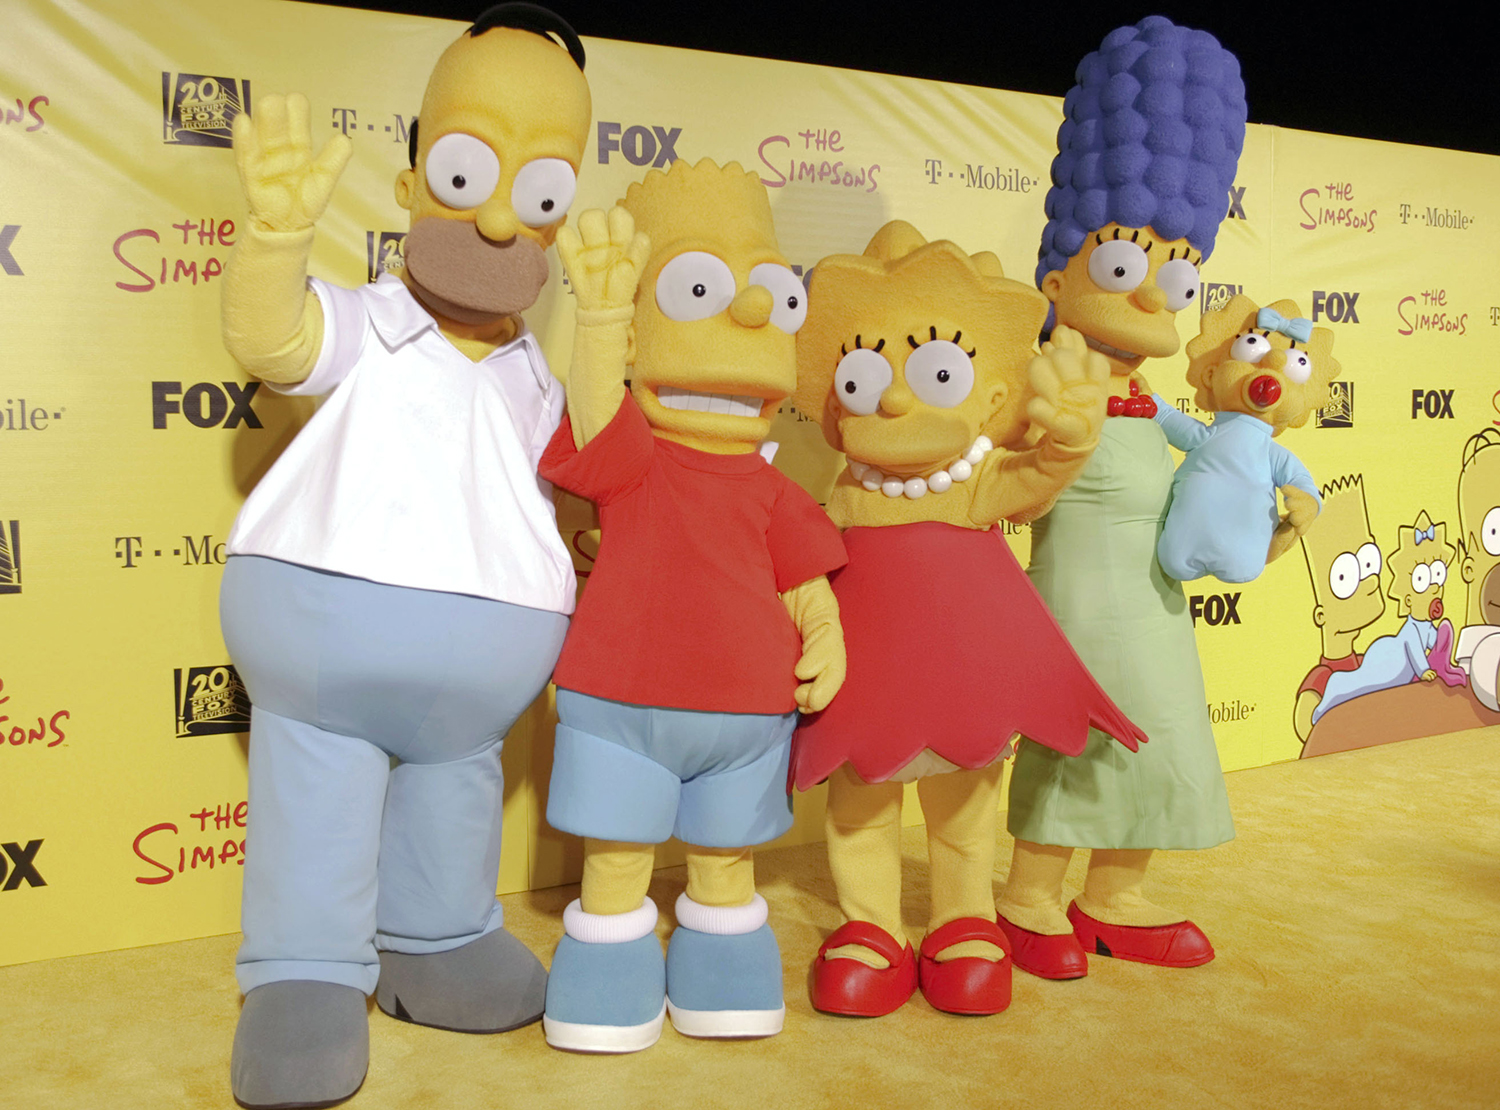 Muñecos de Homer, Bart, Lisa, Marge y Maggy Simpson, personajes de la serie (Foto: Alaric Lambert/ AP)